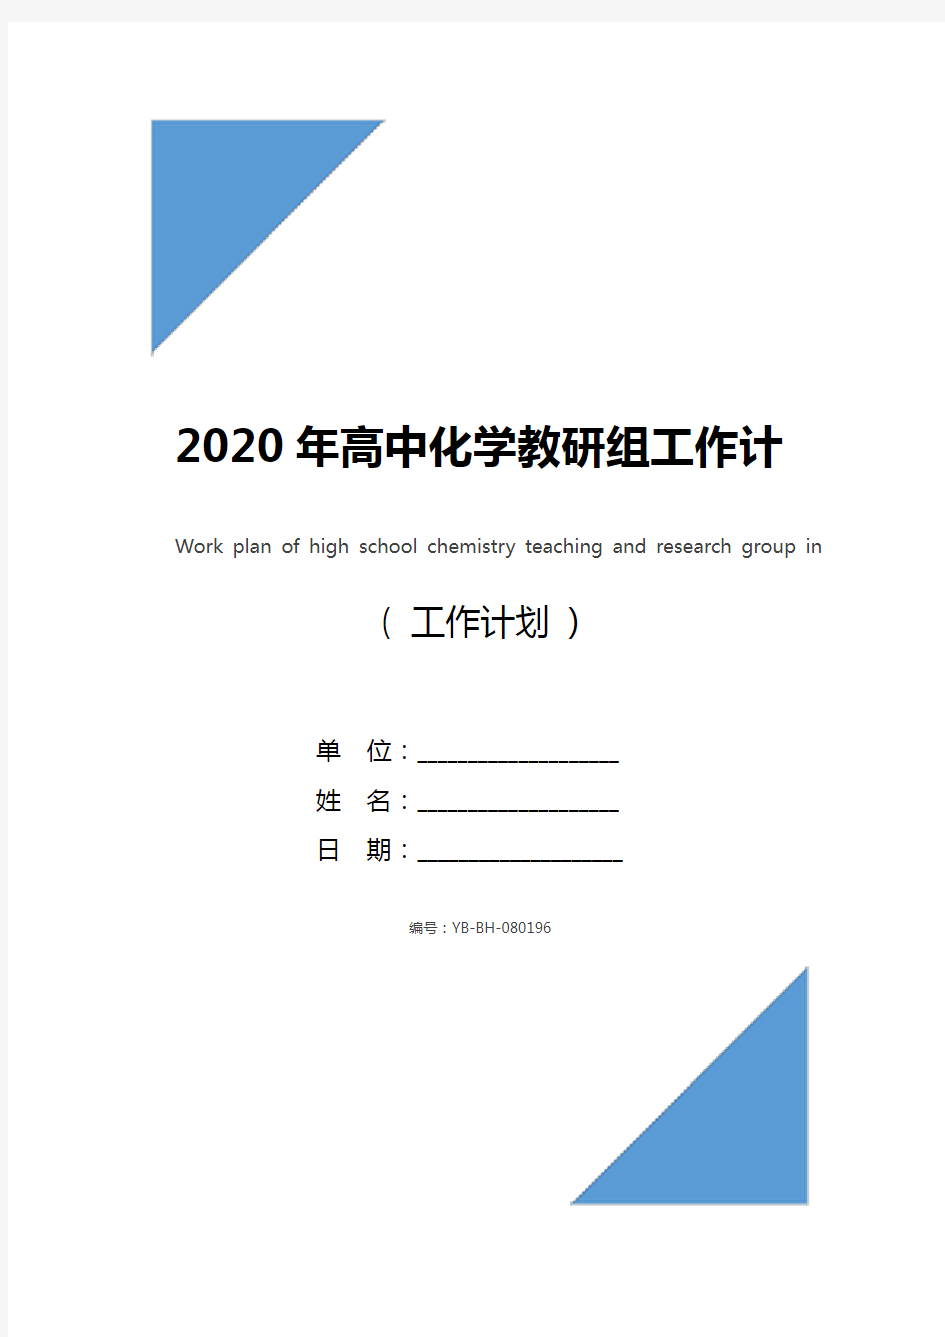 2020年高中化学教研组工作计划